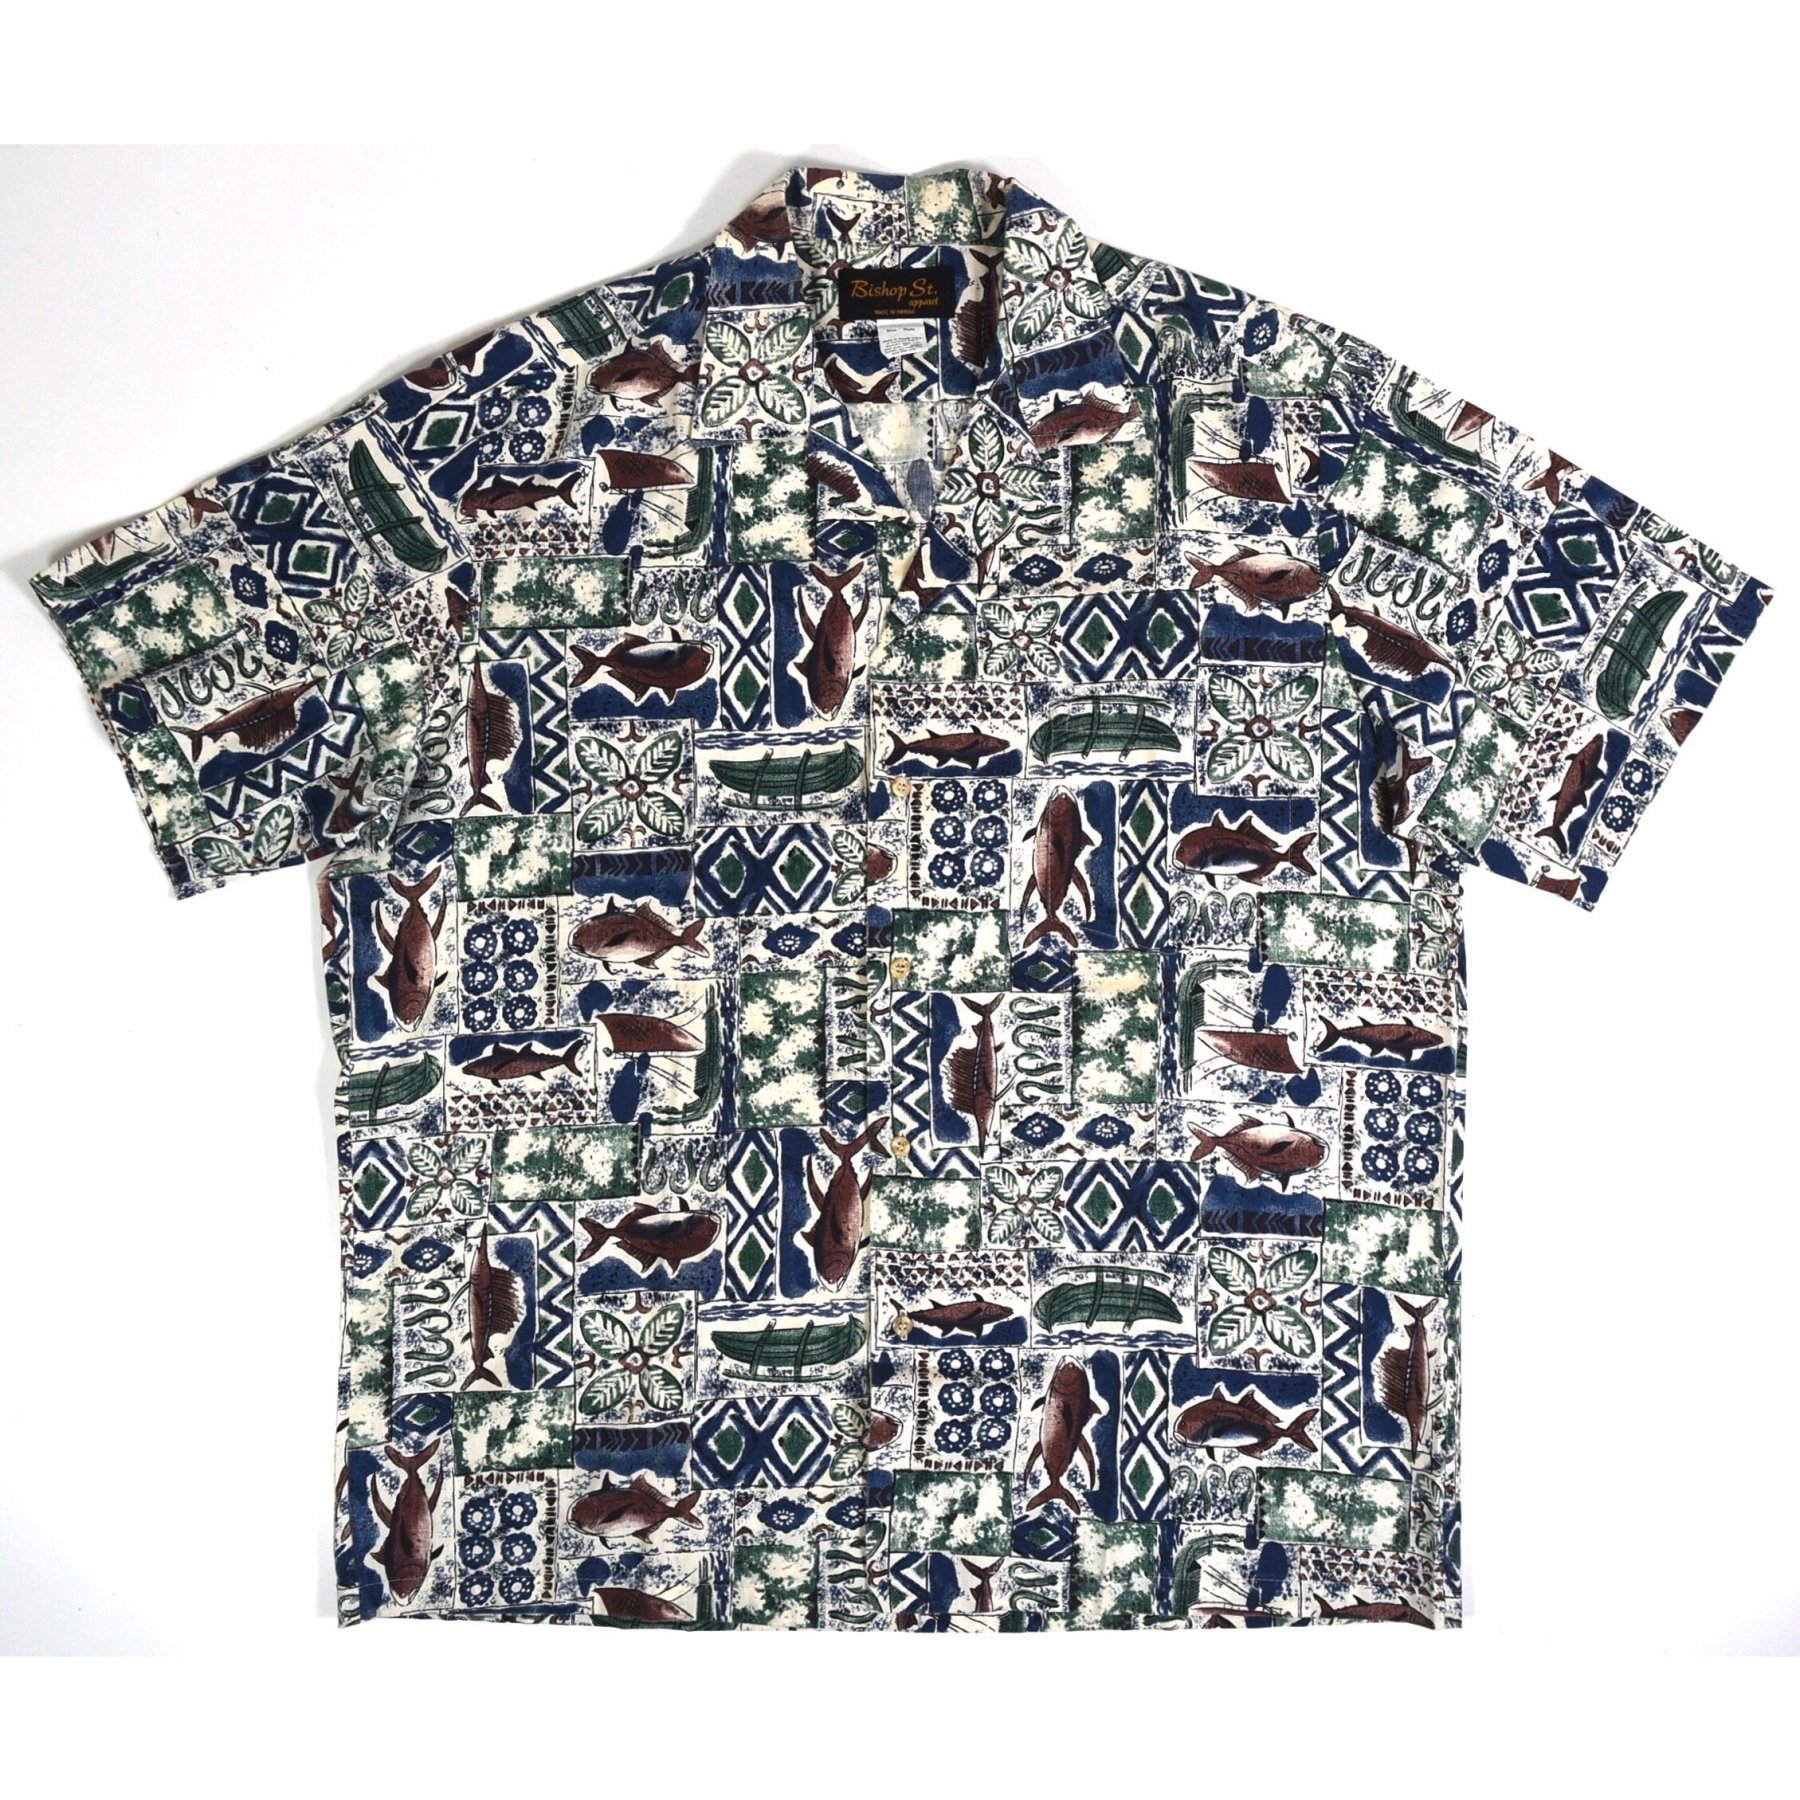 1990s BISHOP ST. Hawaiian shirts XL MADE IN HAWAII USA